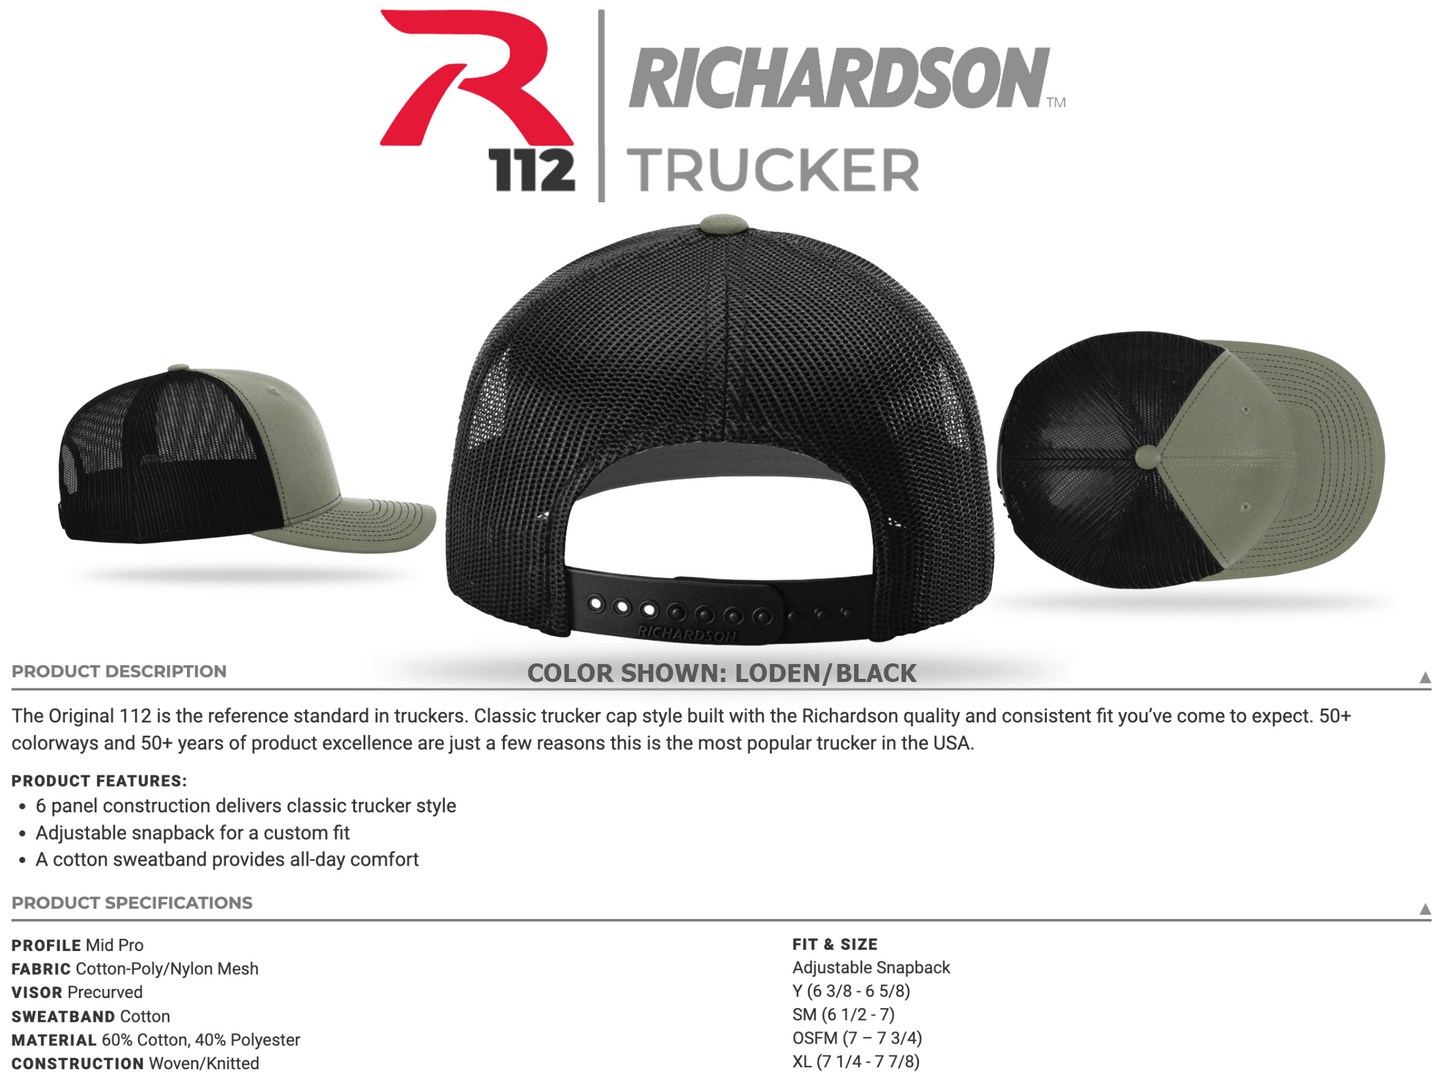 Christian Cross Richardson 112 Trucker Mesh Back Hat